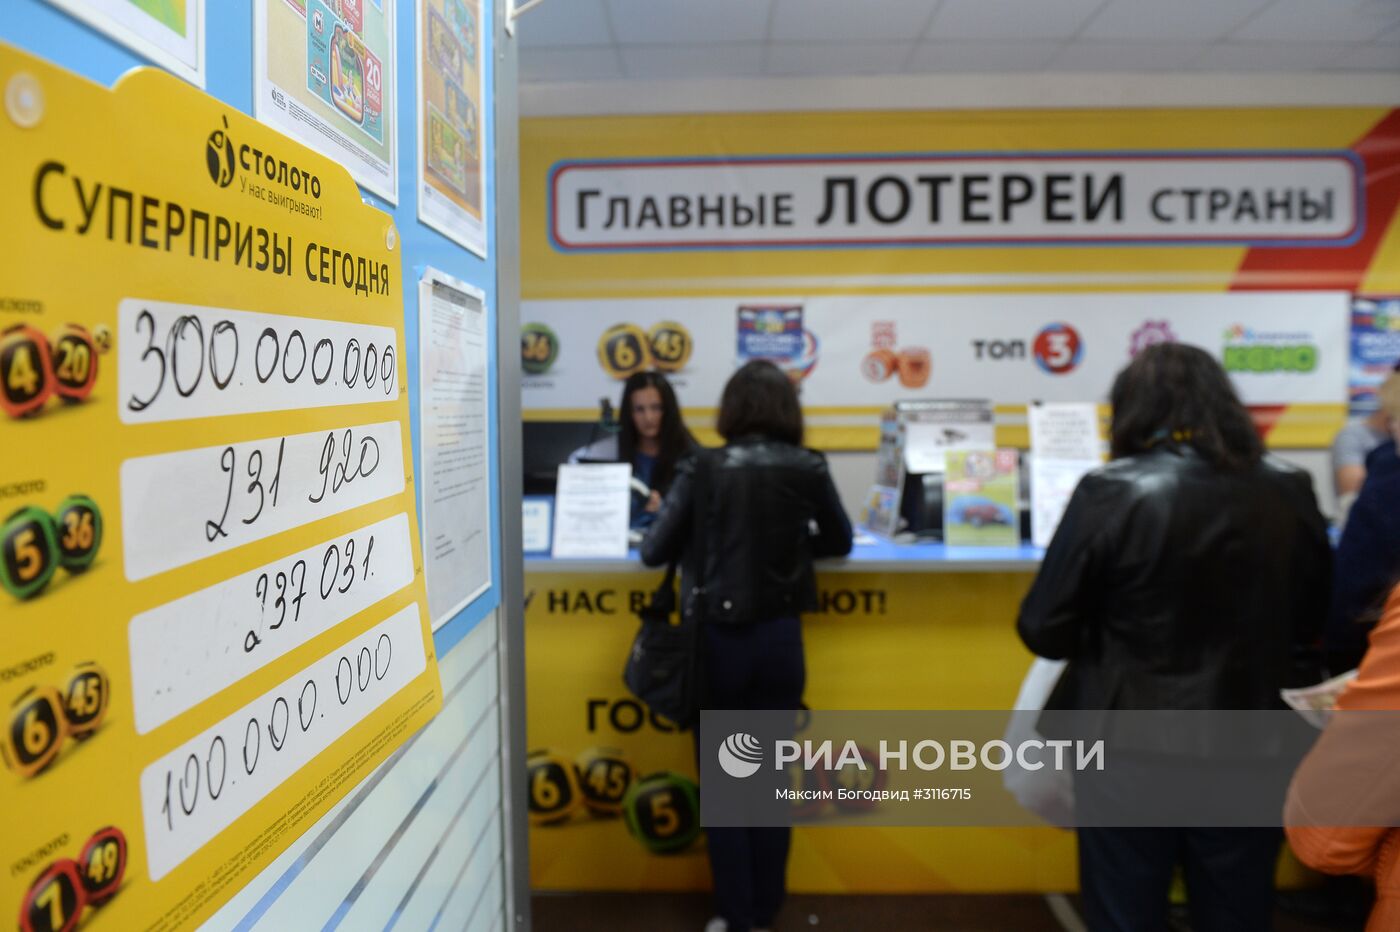 Продажа лотерейных билетов в Казани